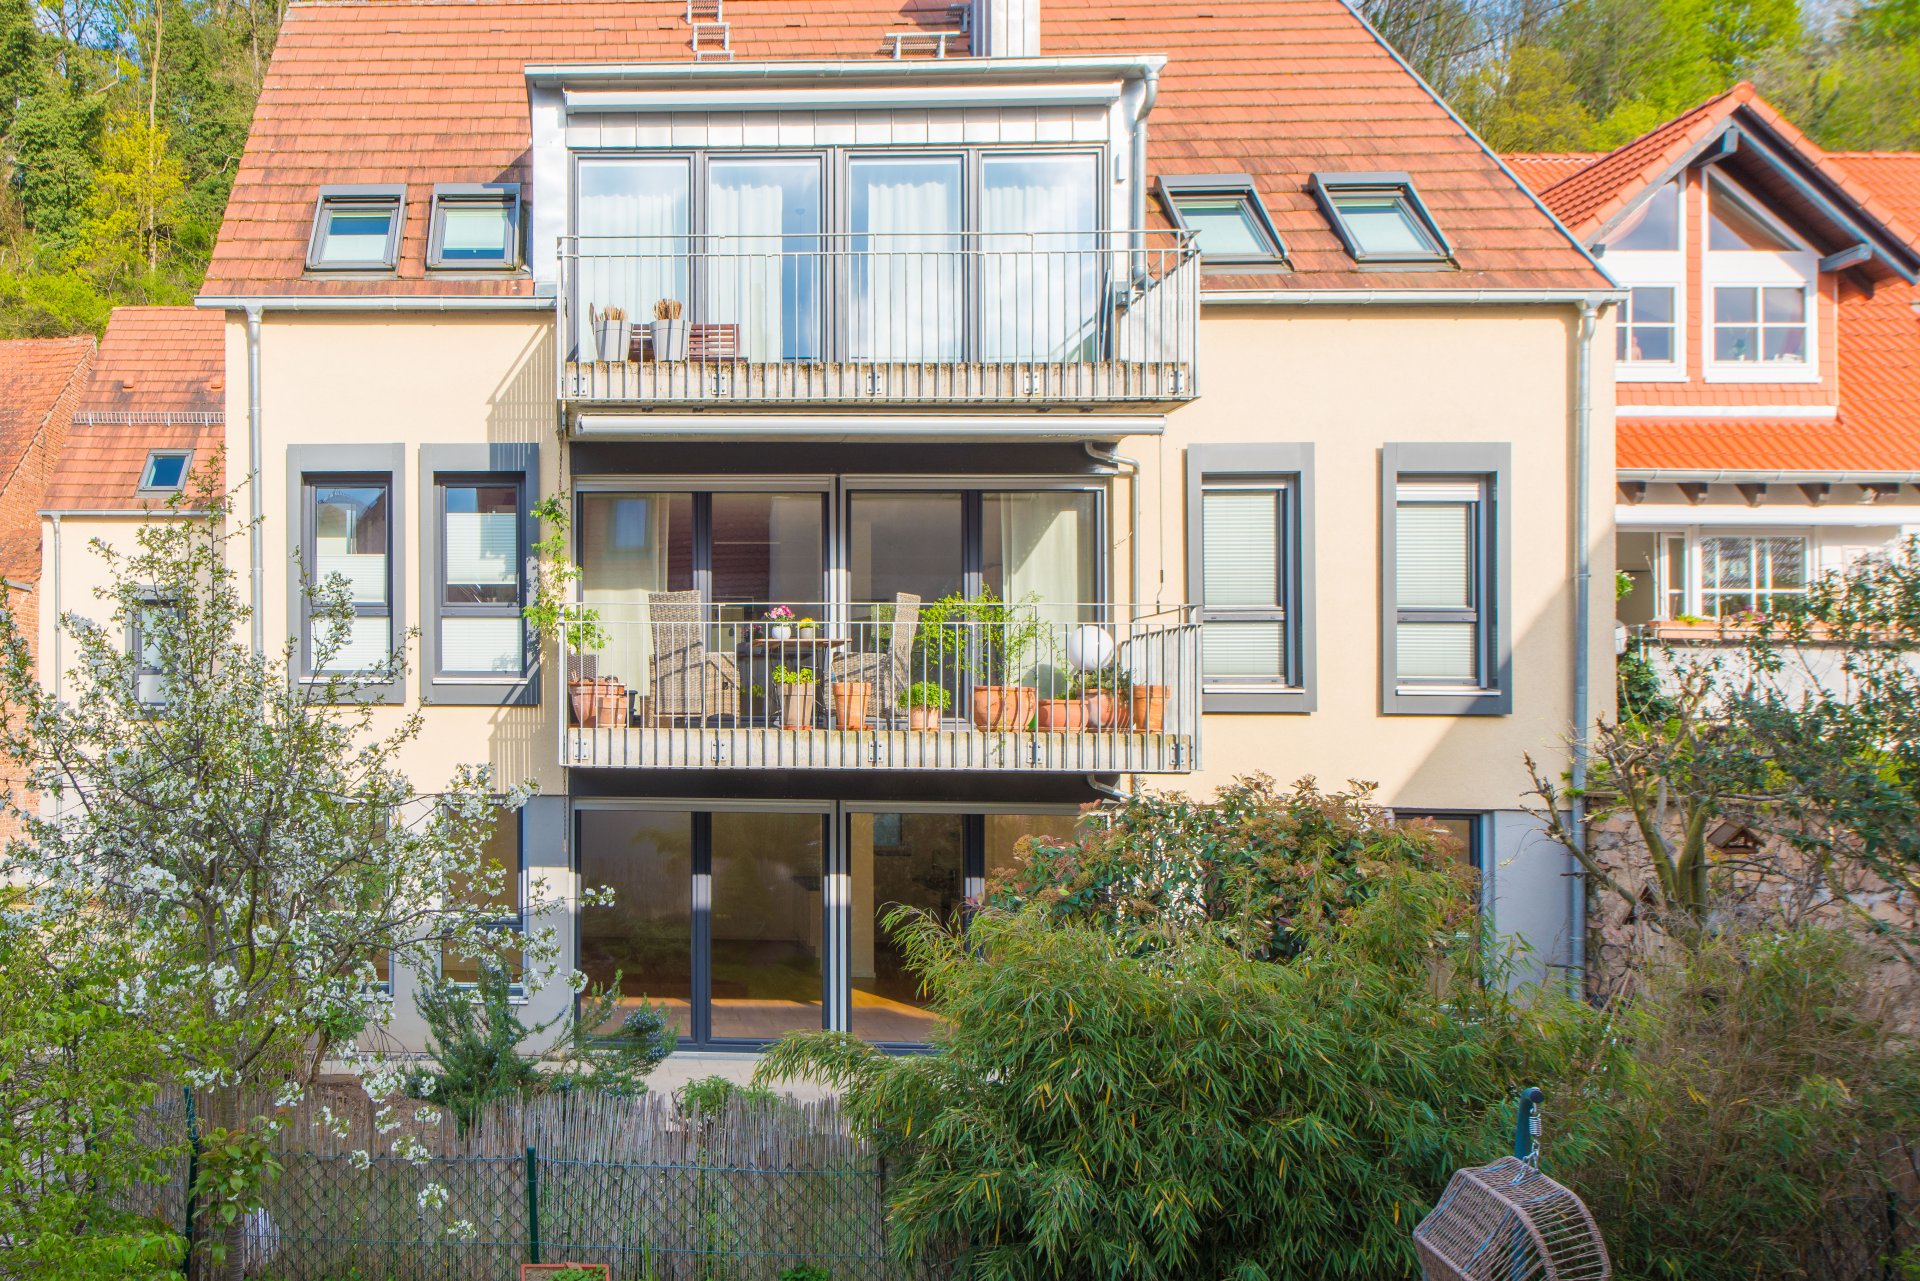 Auerbach - Modernes Wohnen, mit eigenem Garten, energieeffizient, mittendrin und doch ganz ruhig 